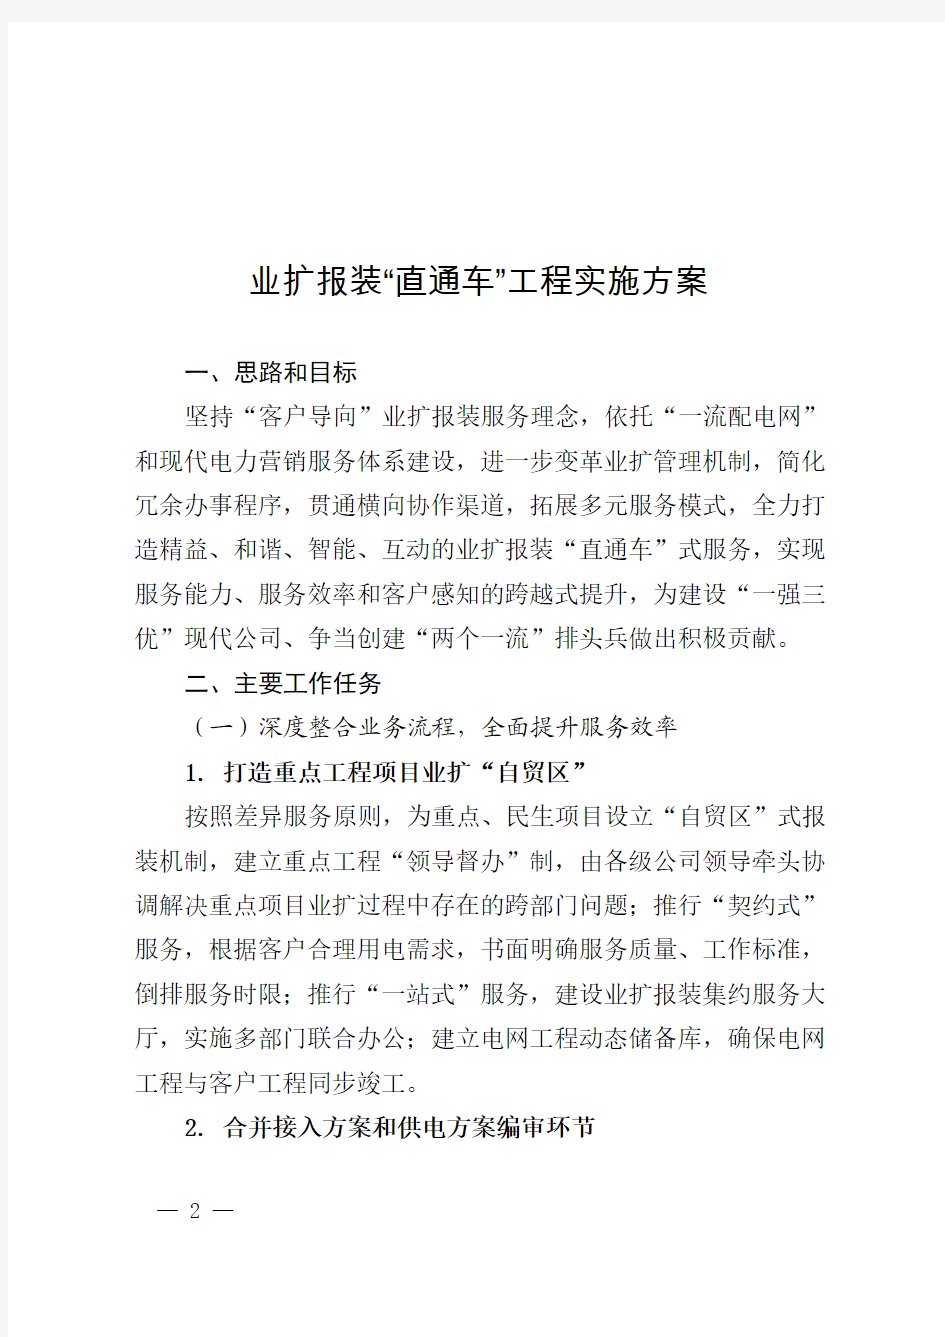 江苏省电力公司关于印发业扩报装“直通车”工程实施方案